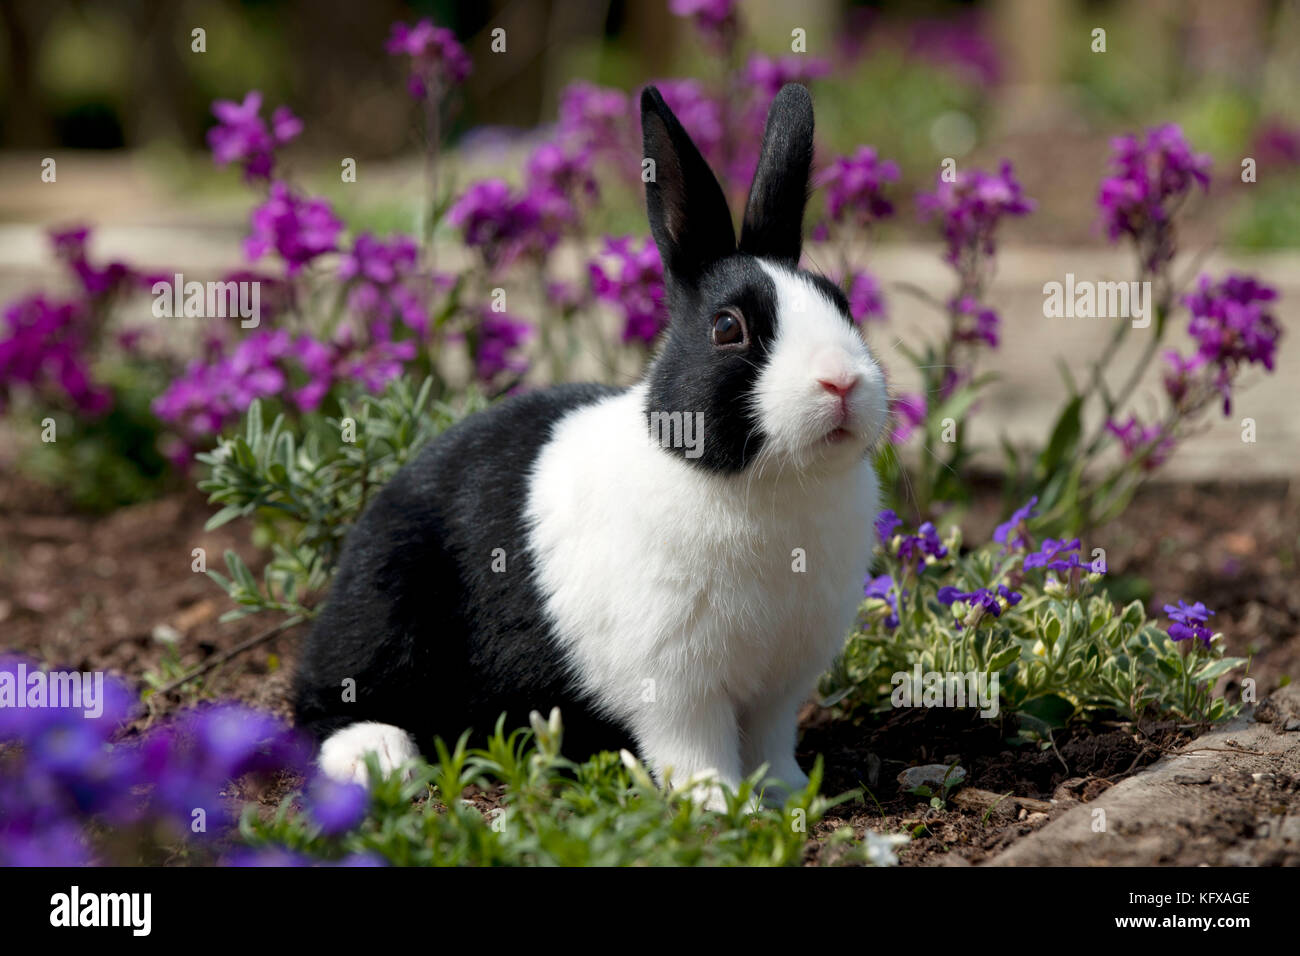 LAPIN - lapin hollandais. assis dans un lit à fleurs. Banque D'Images